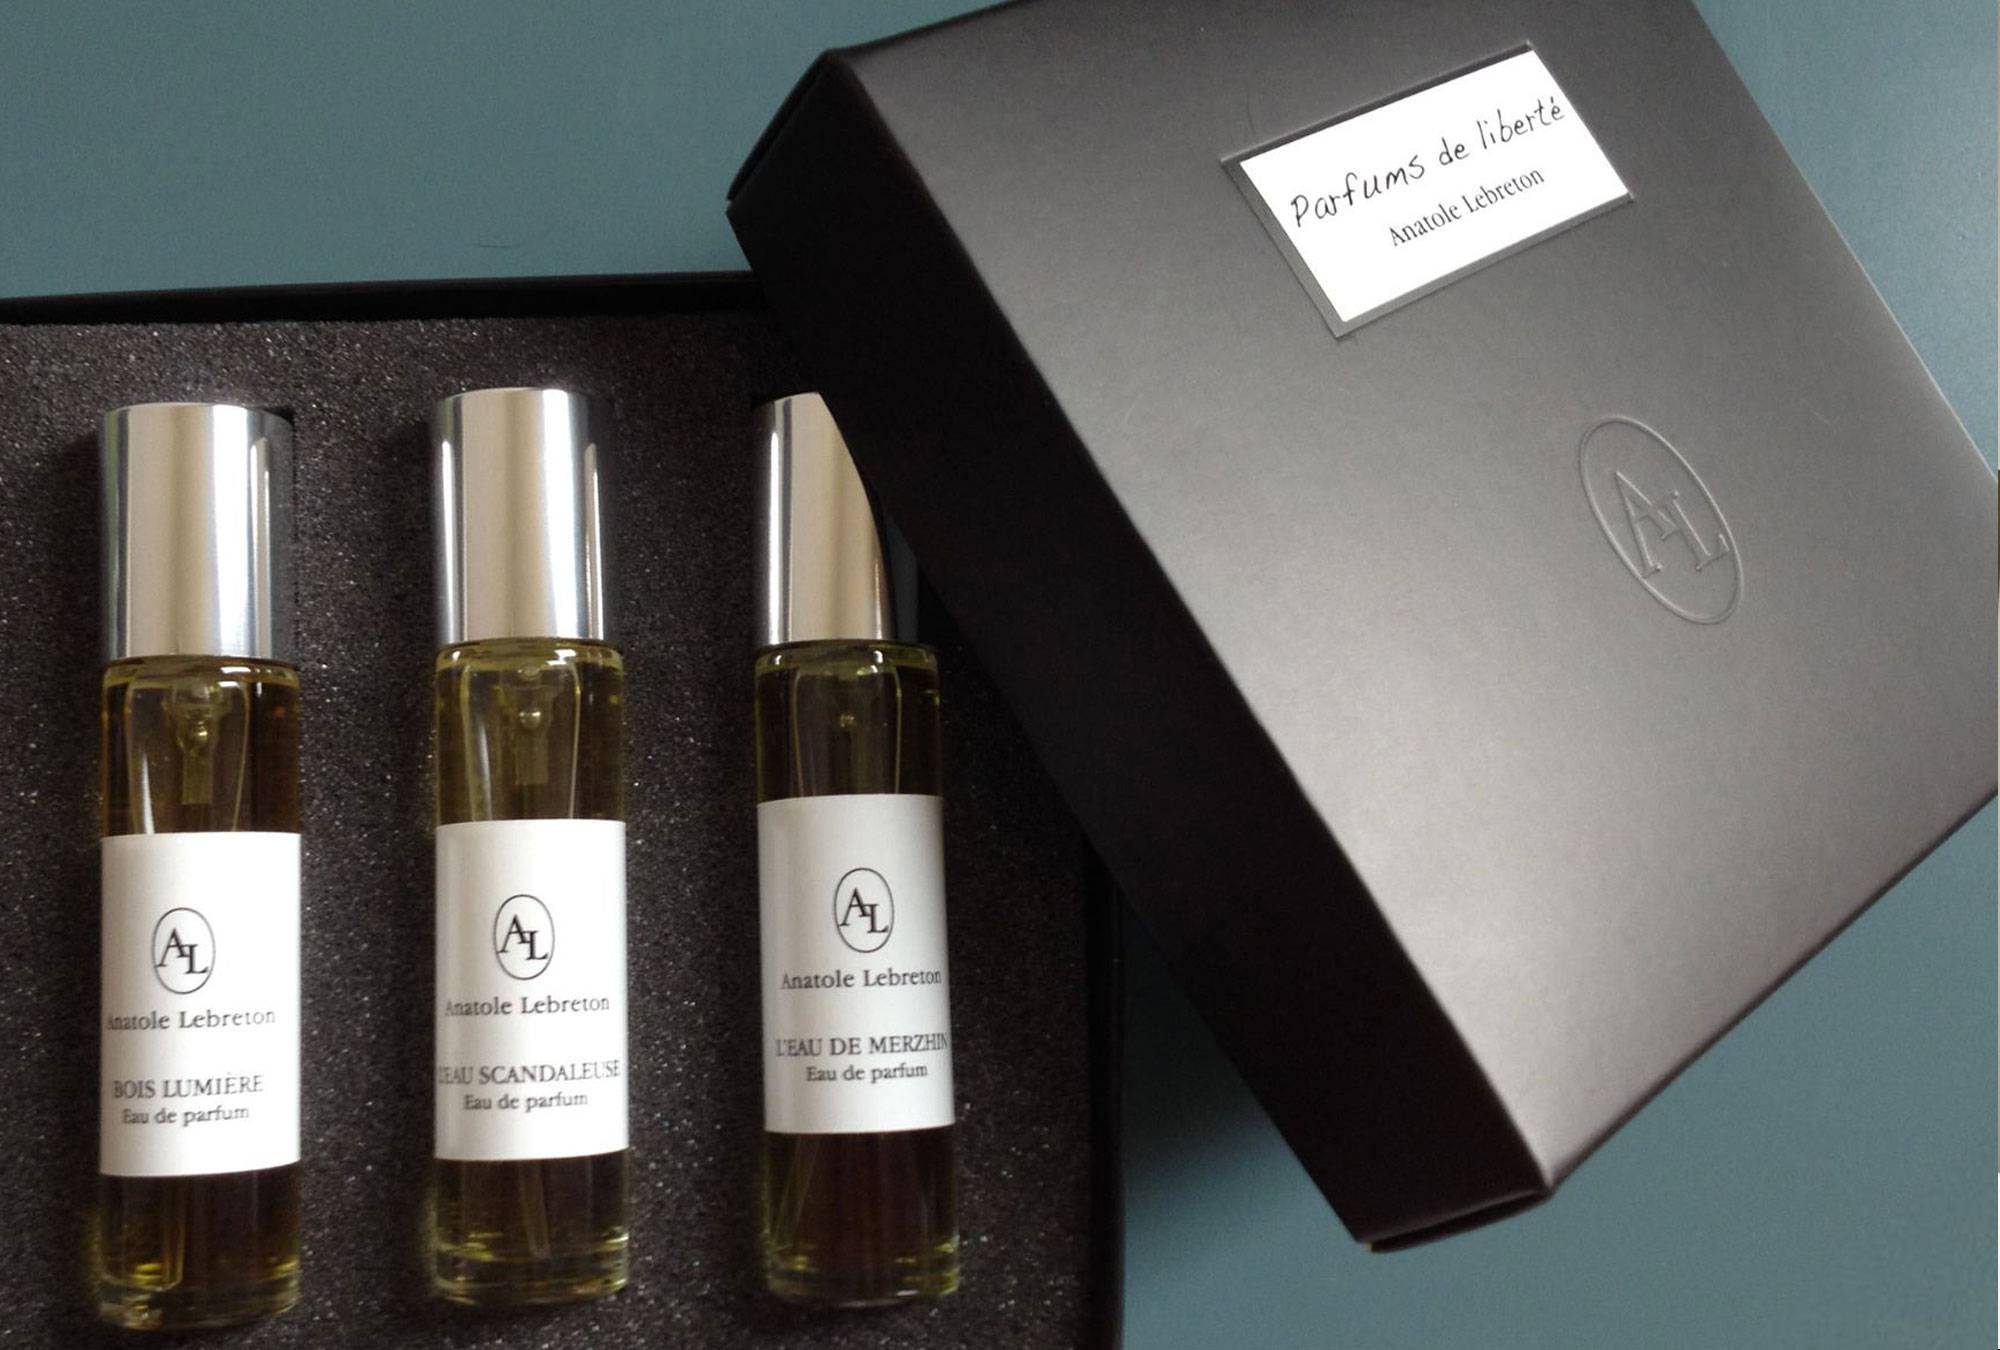 Parfums en liberté, Anatole Lebreton, packaging.